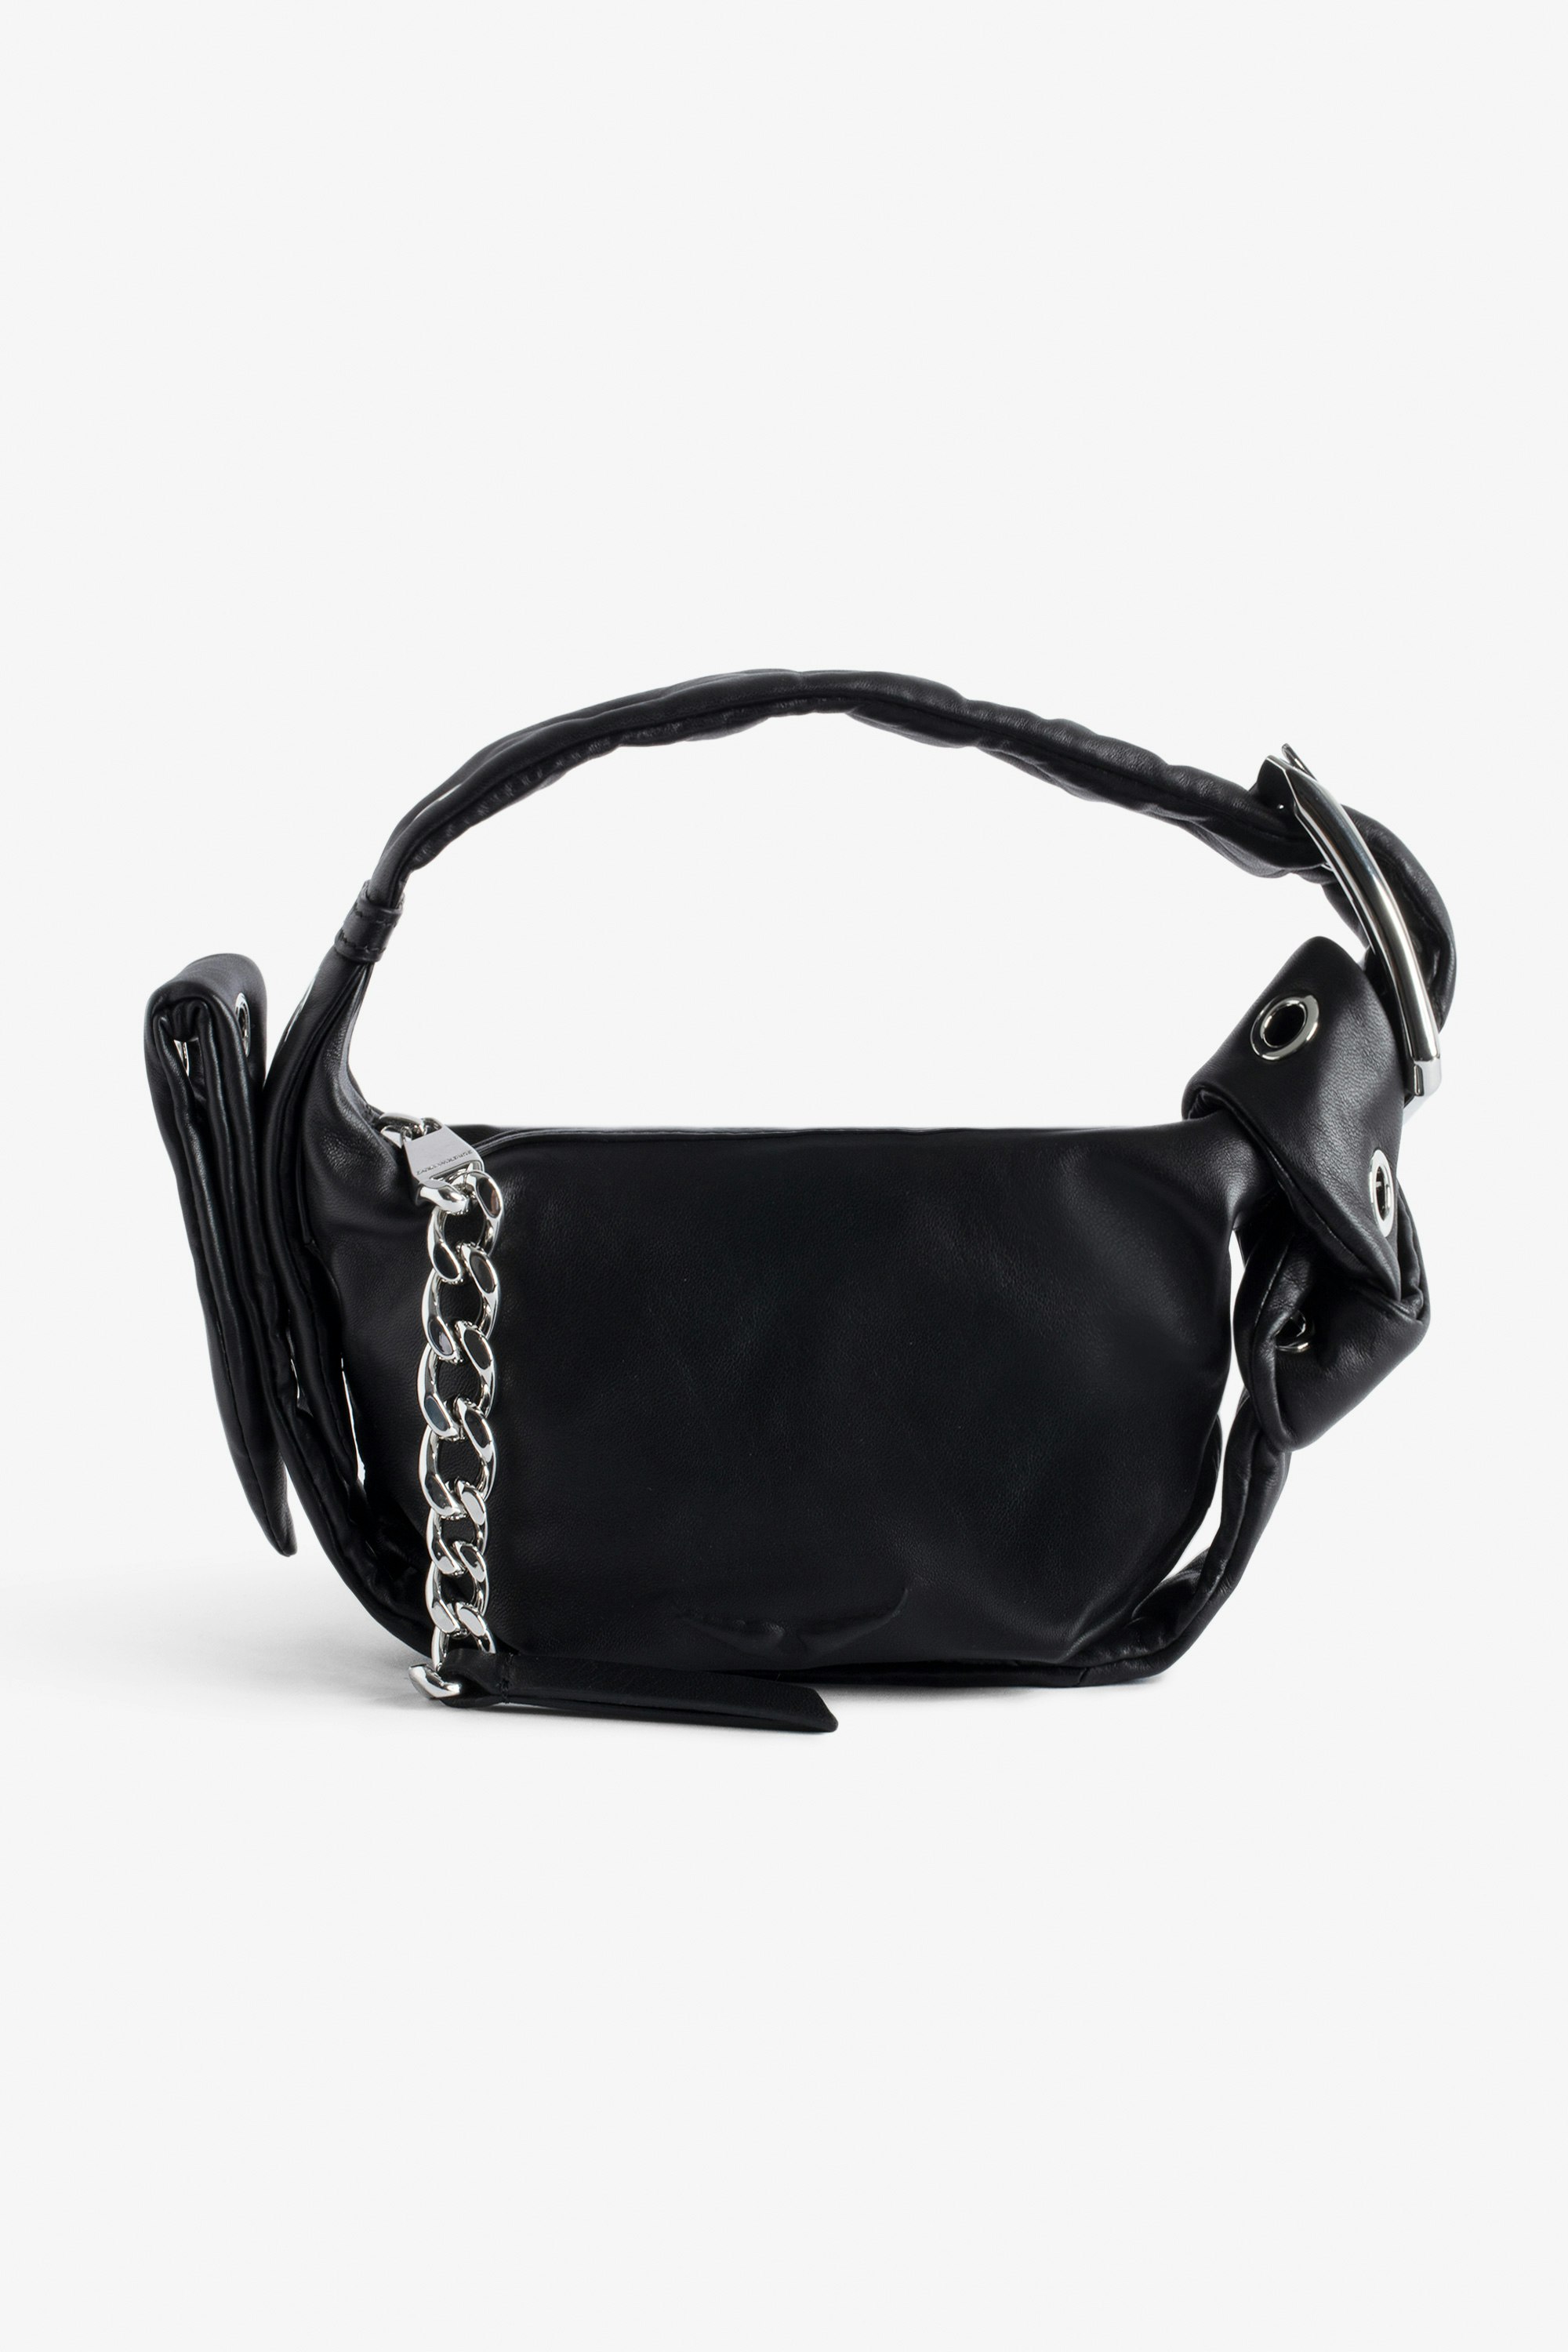 Borsa Le Cecilia XS Obsession - Piccola borsa in pelle liscia nera con tracolla e fibbia in metallo a C da donna.